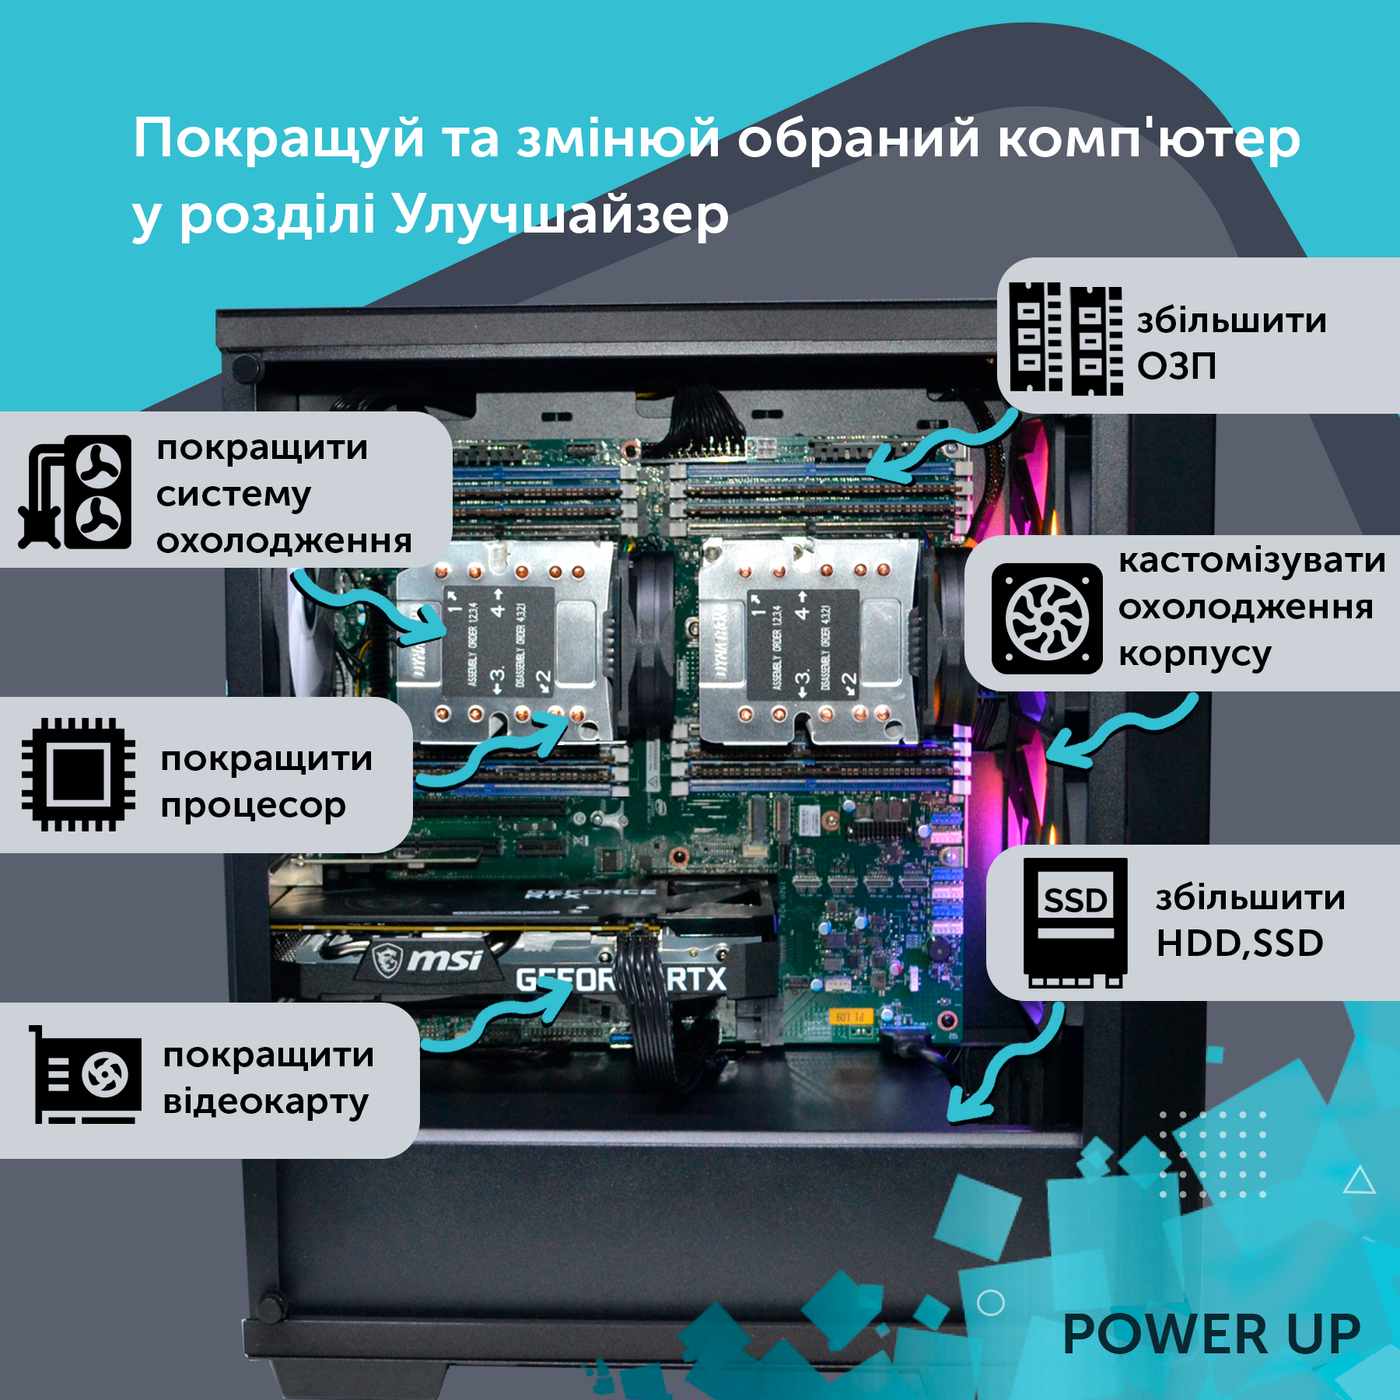 Робоча станція PowerUp Desktop #264 Ryzen 9 7950x/64 GB/SSD 4TB/GeForce RTX 4060 8GB